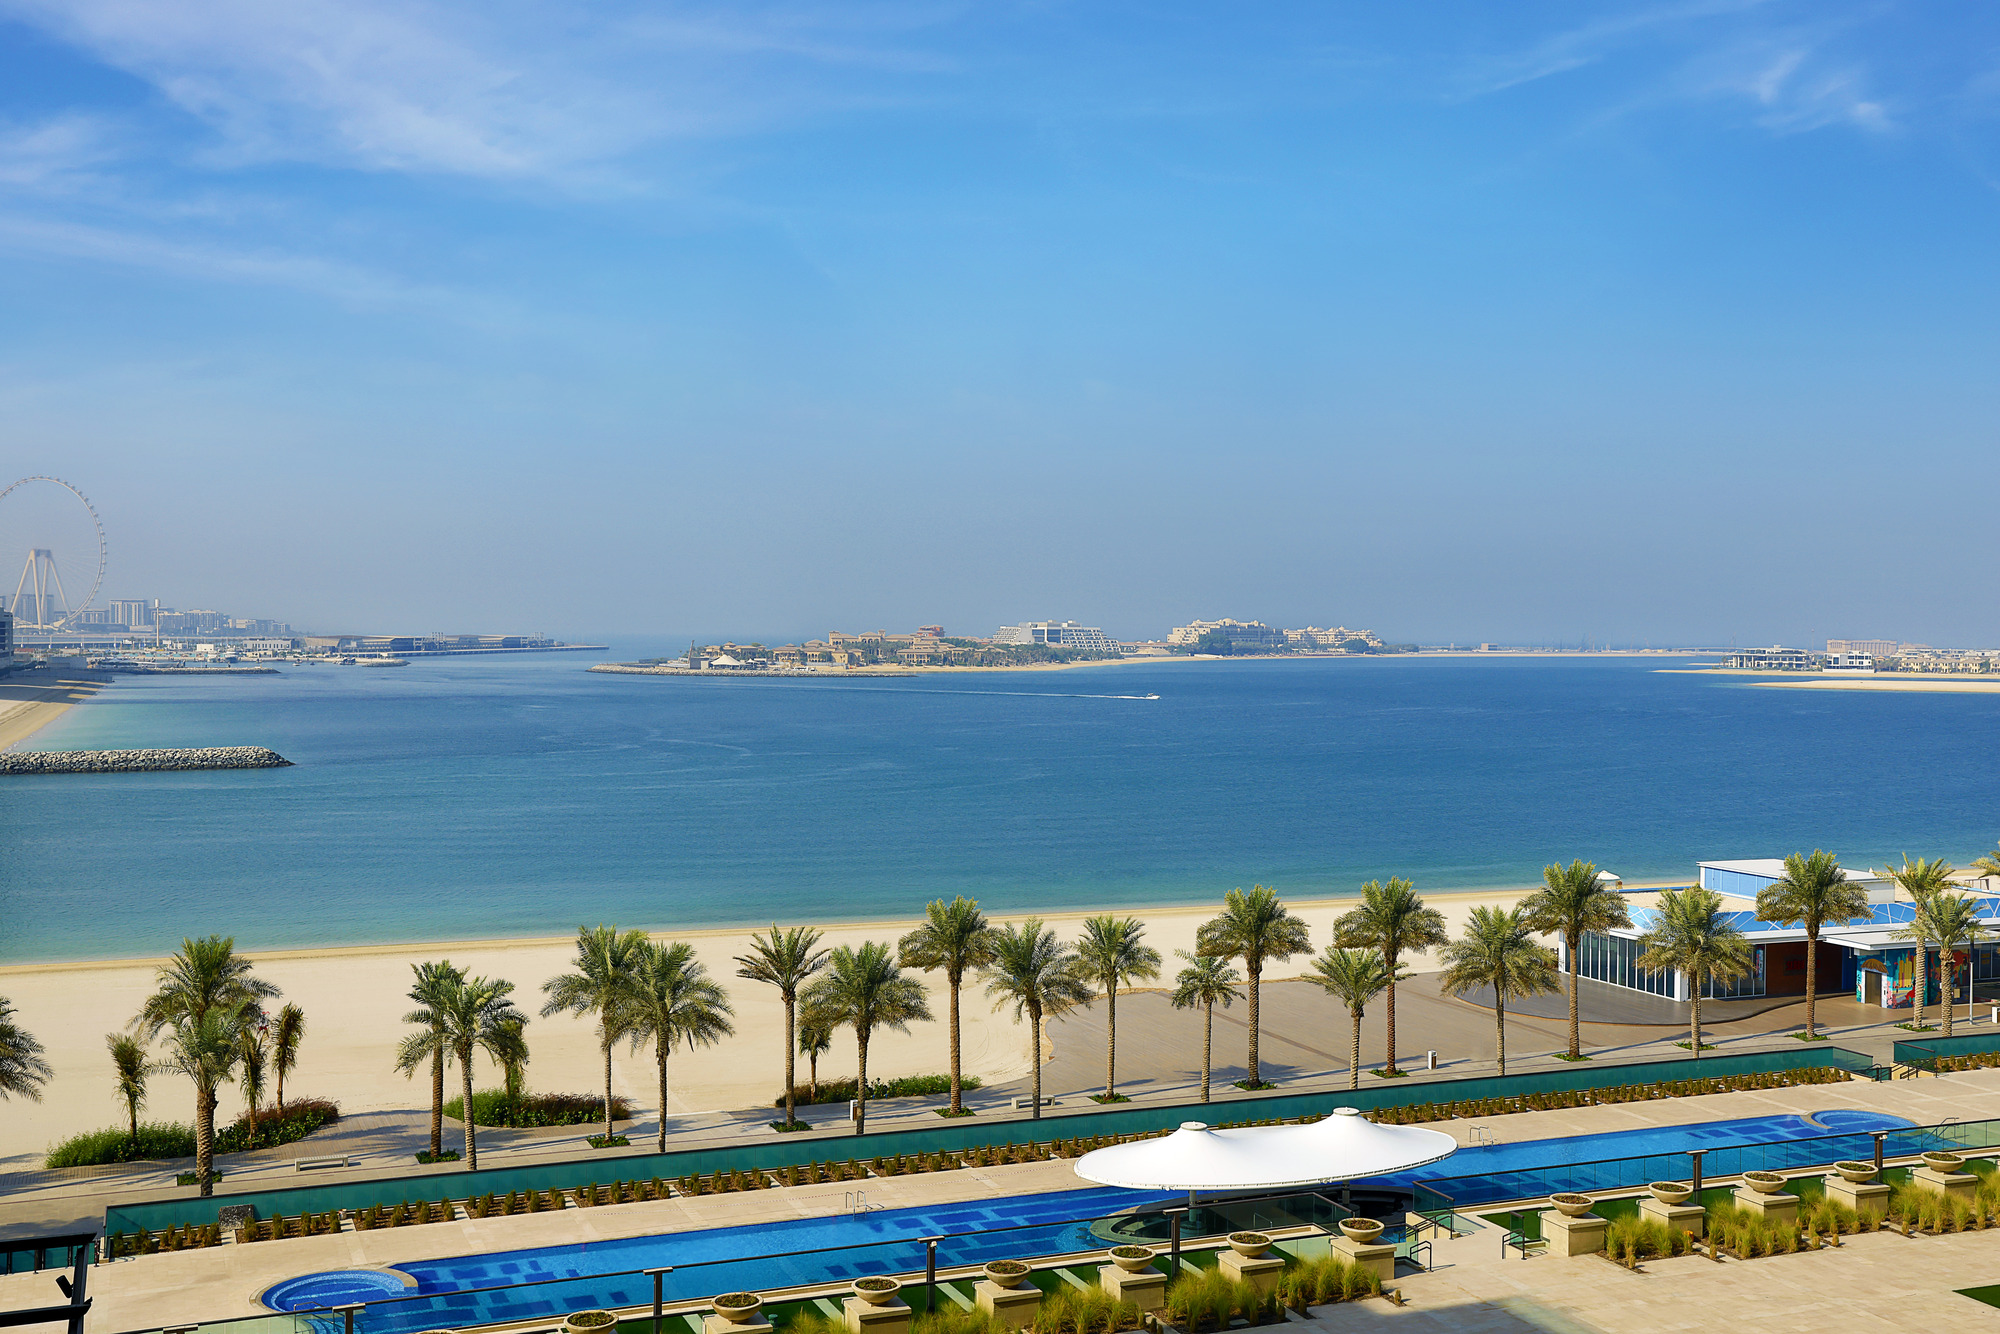  View from Marriott Resort Palm Jumeirah, Dubai.